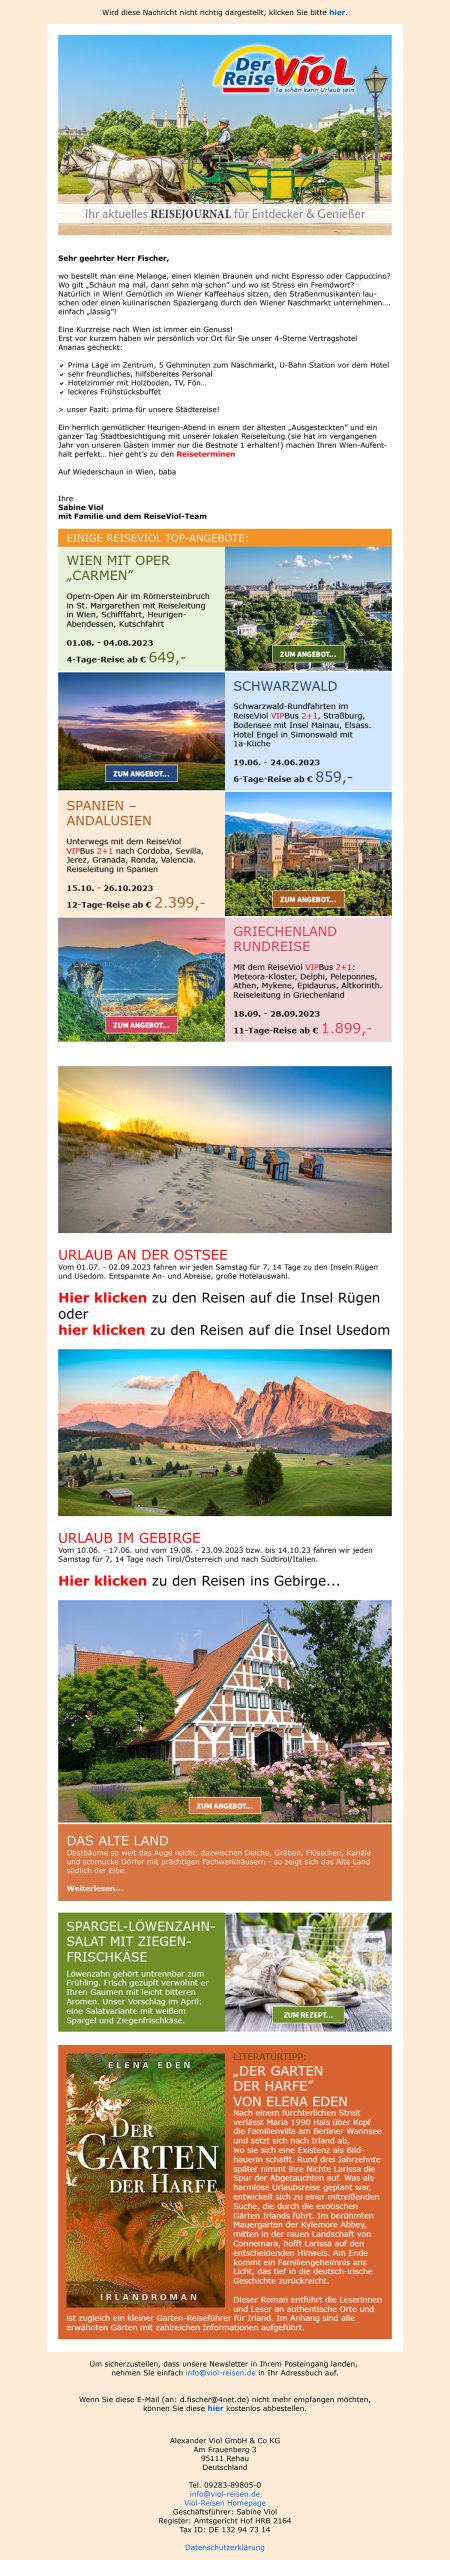 Beispiel: Viol Reisejournal für Entdecker & Genießer